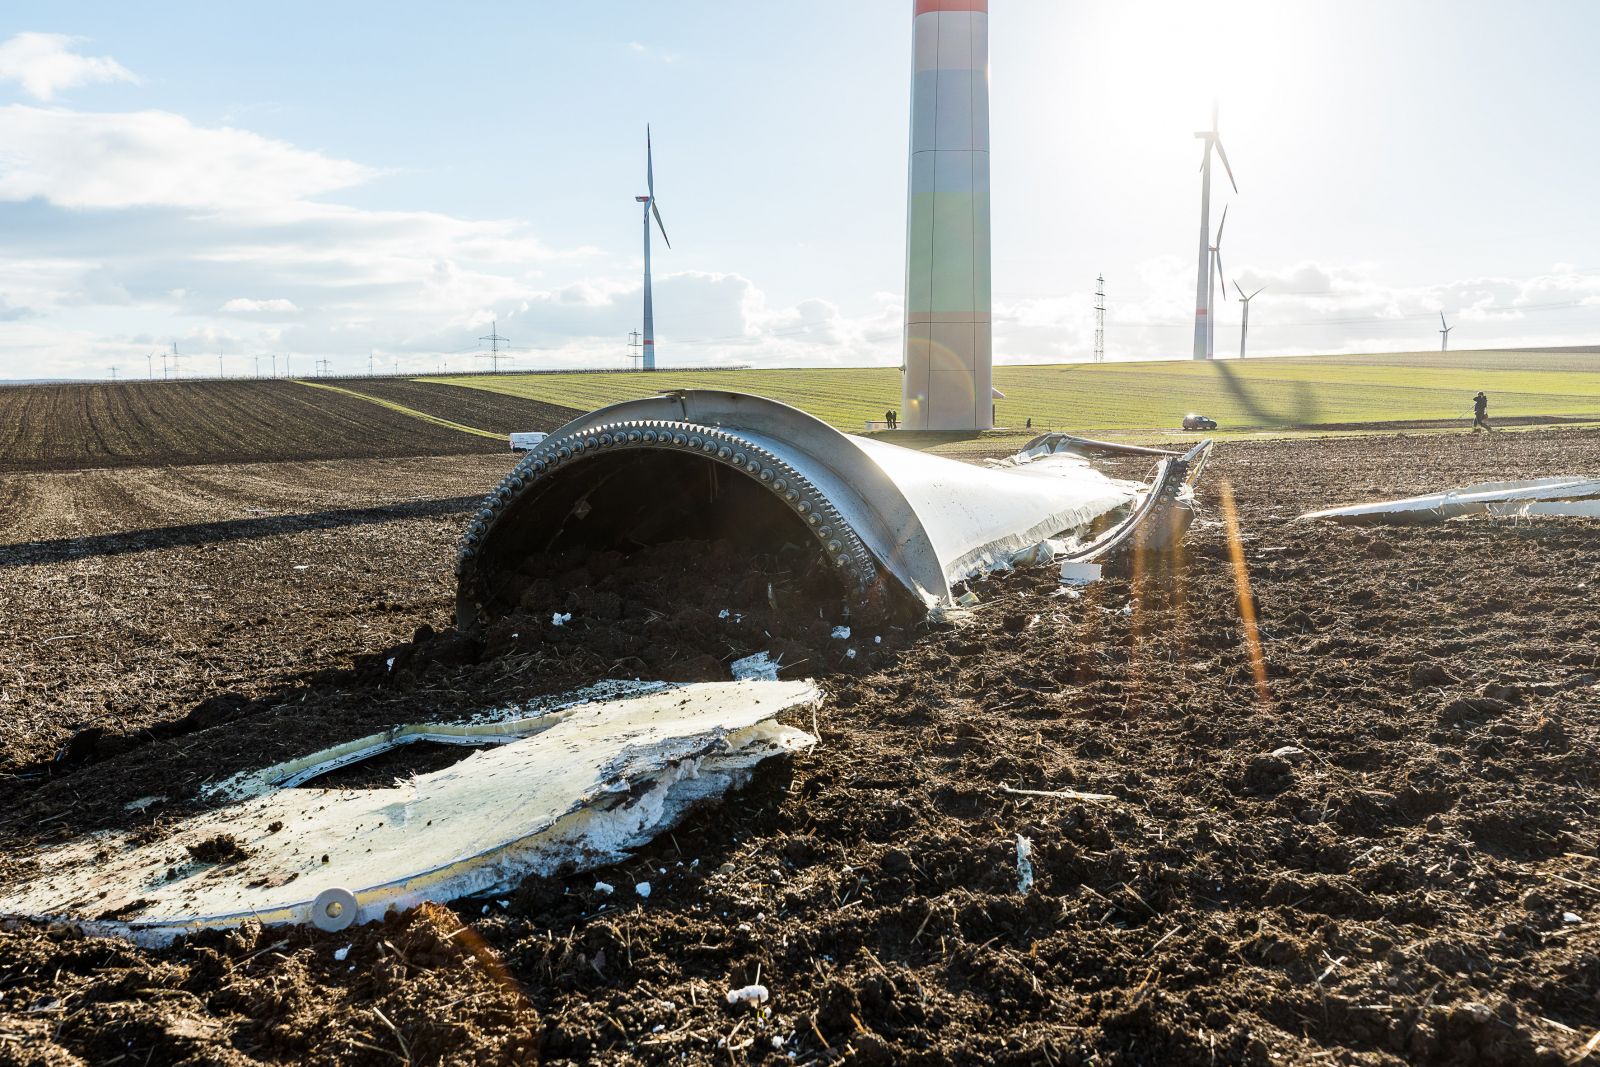 broken turbine credit photographer: Carsten Selak 